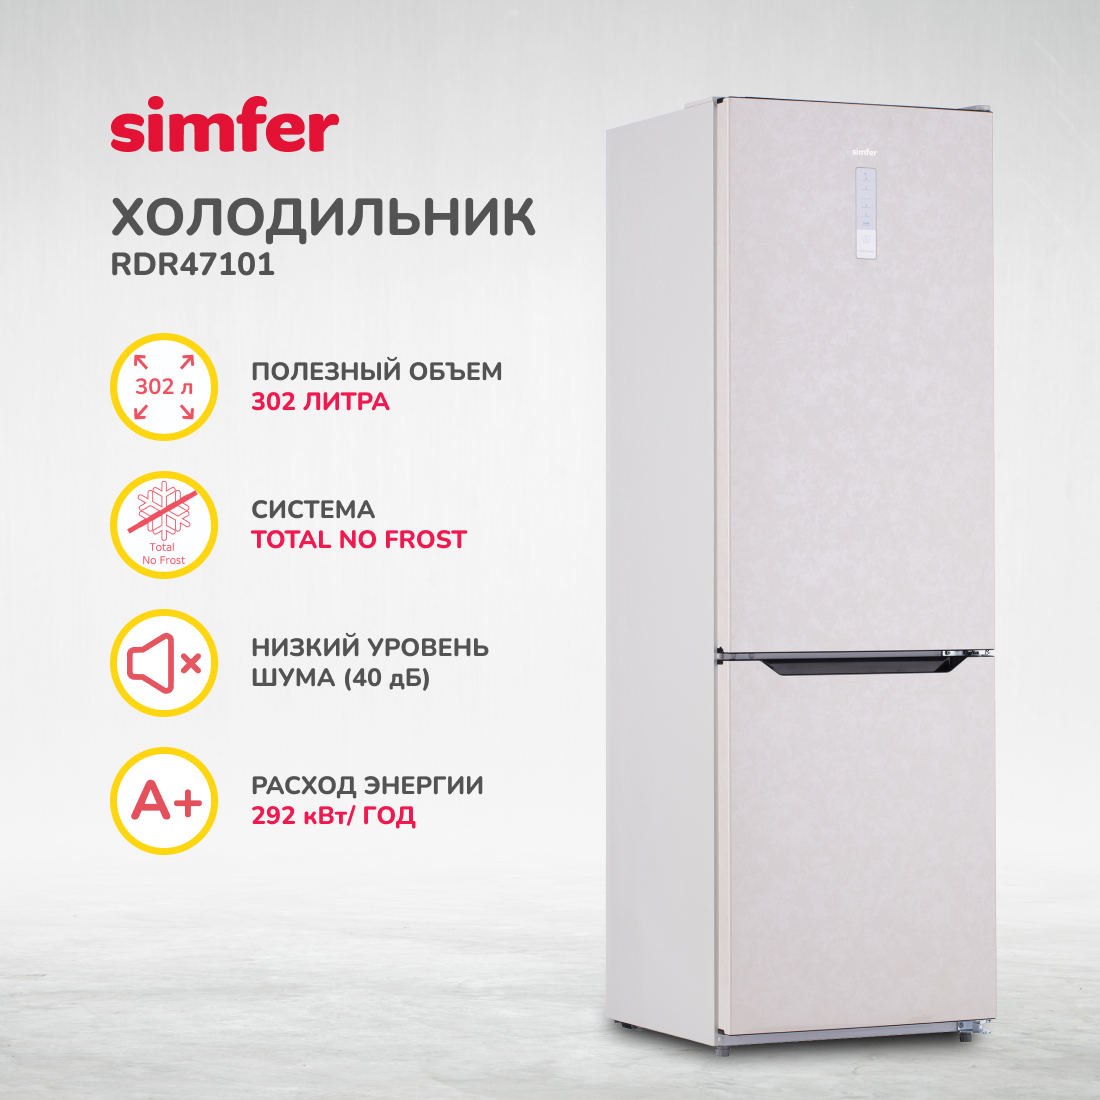 Холодильник Simfer RDR47101, No Frost, двухкамерный, 302 л